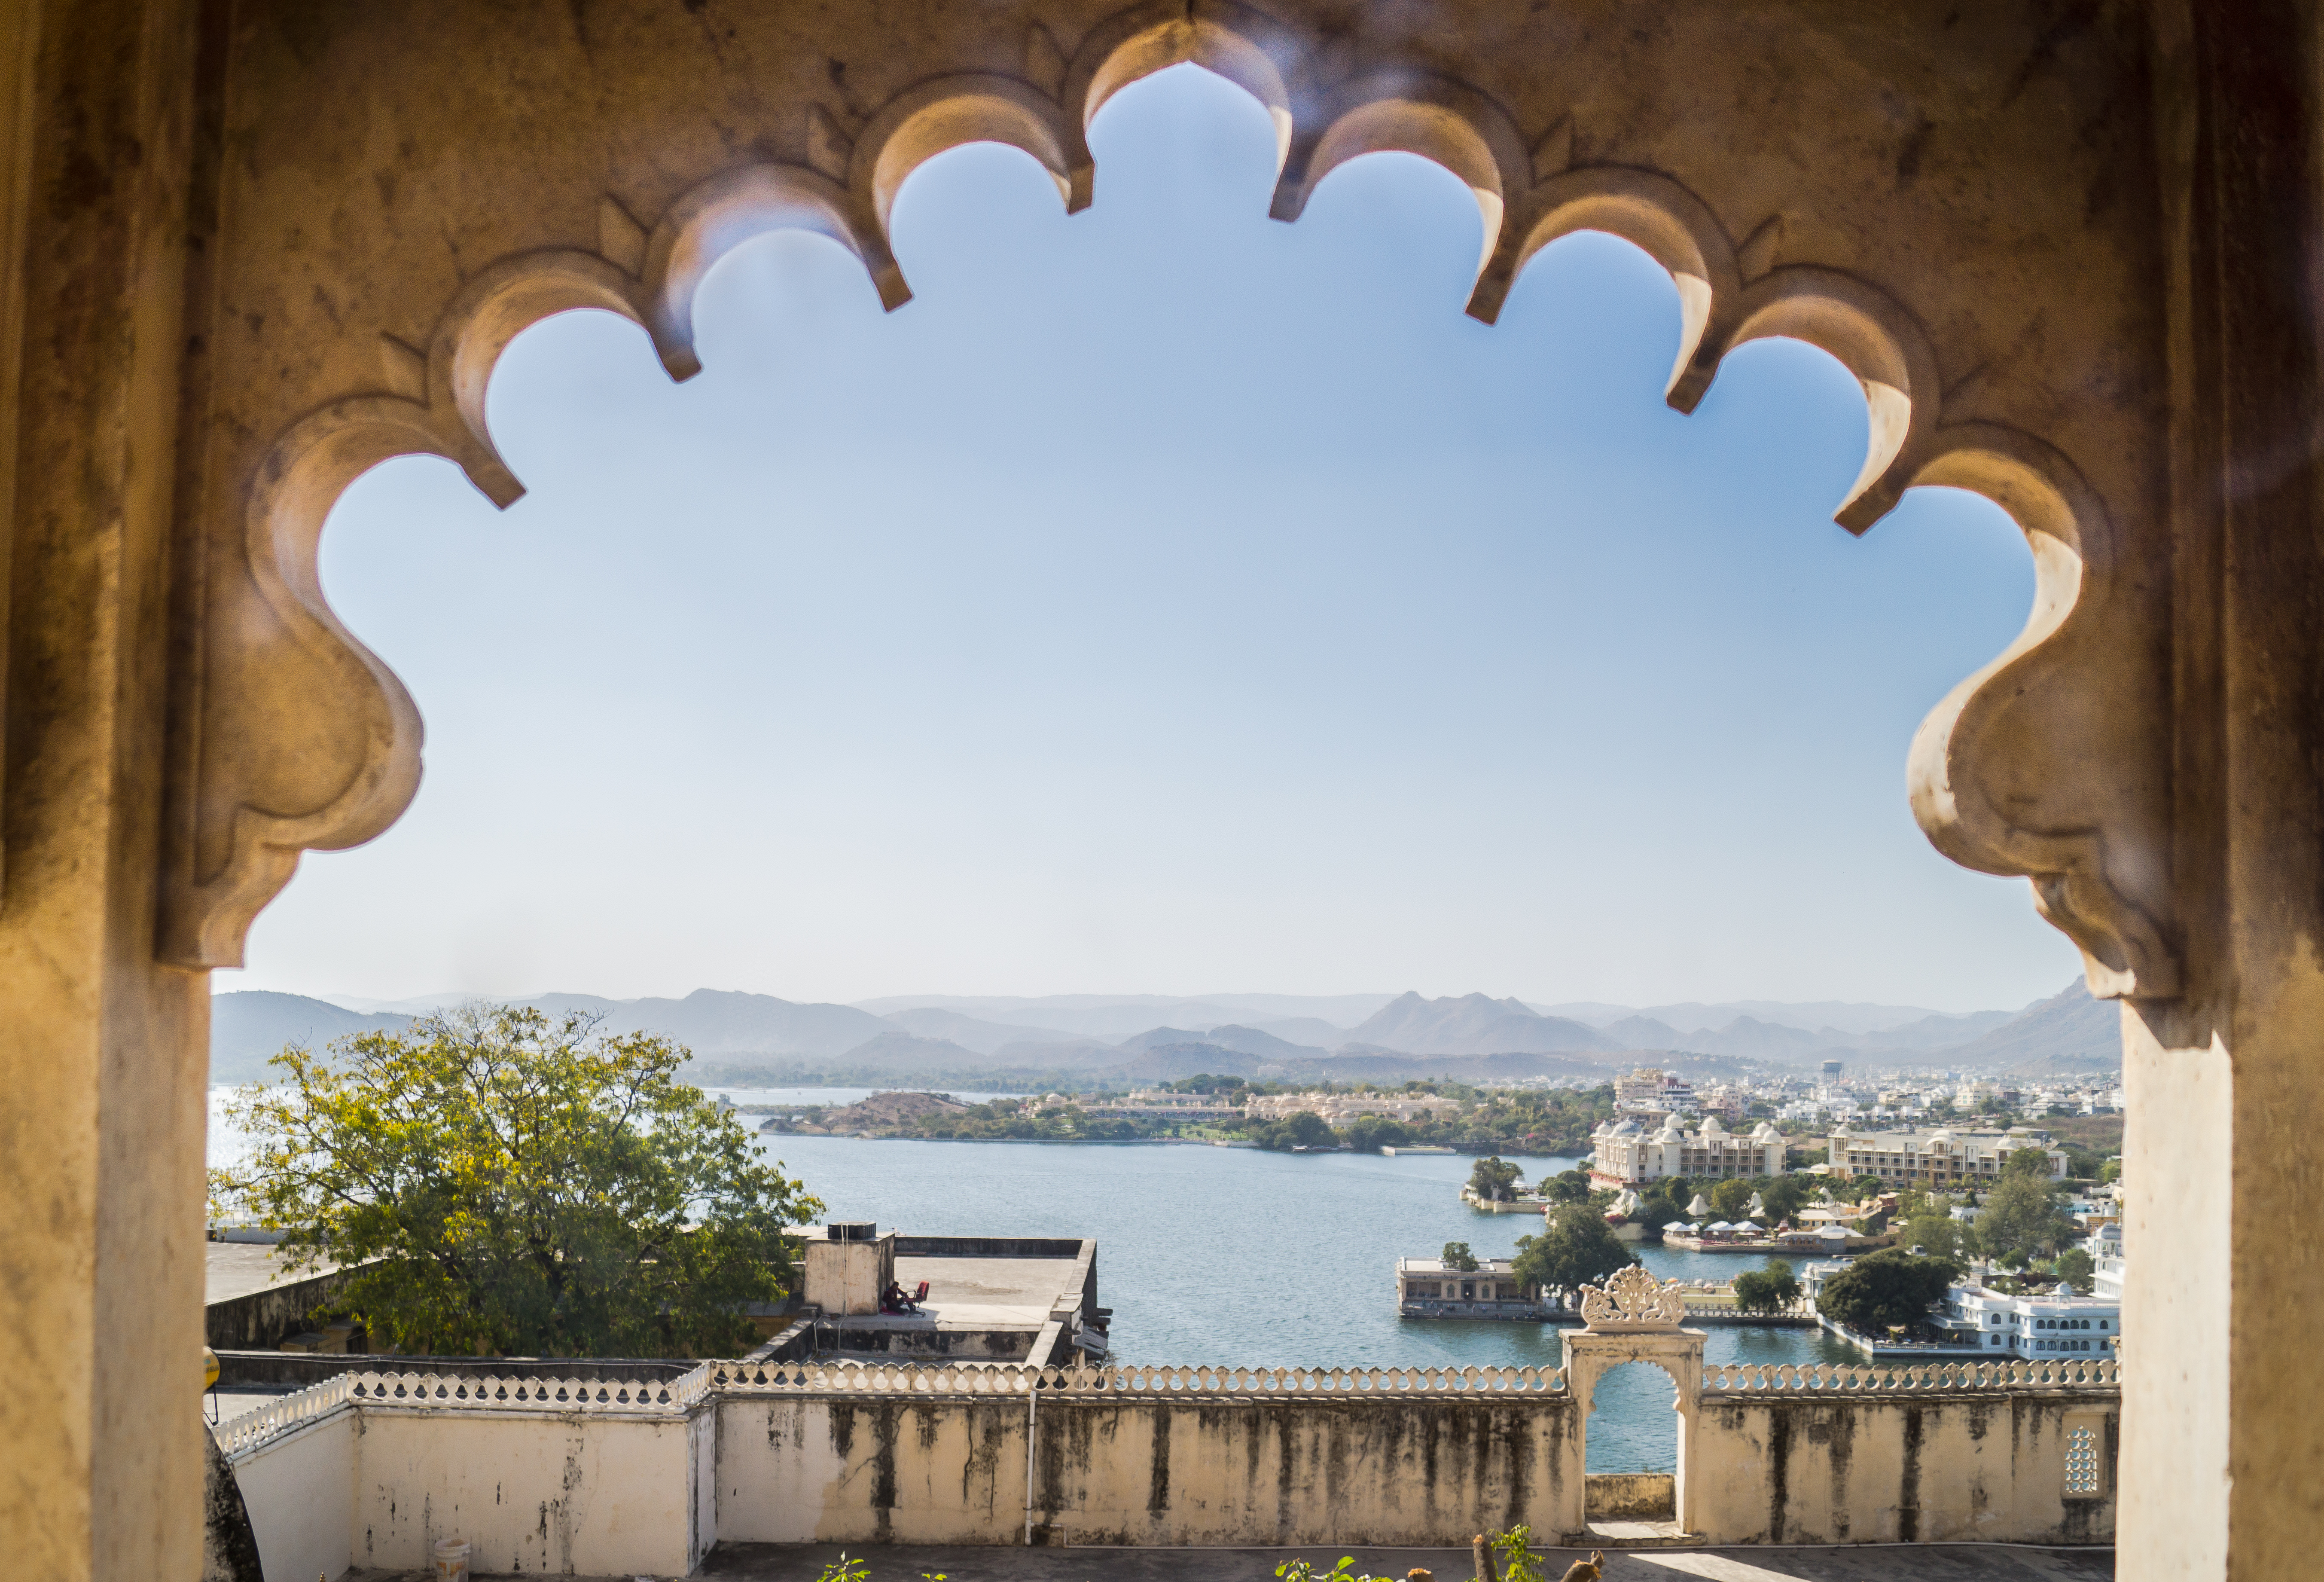 Udaipur City Palace and Lake Pichola | Rajasthan | India